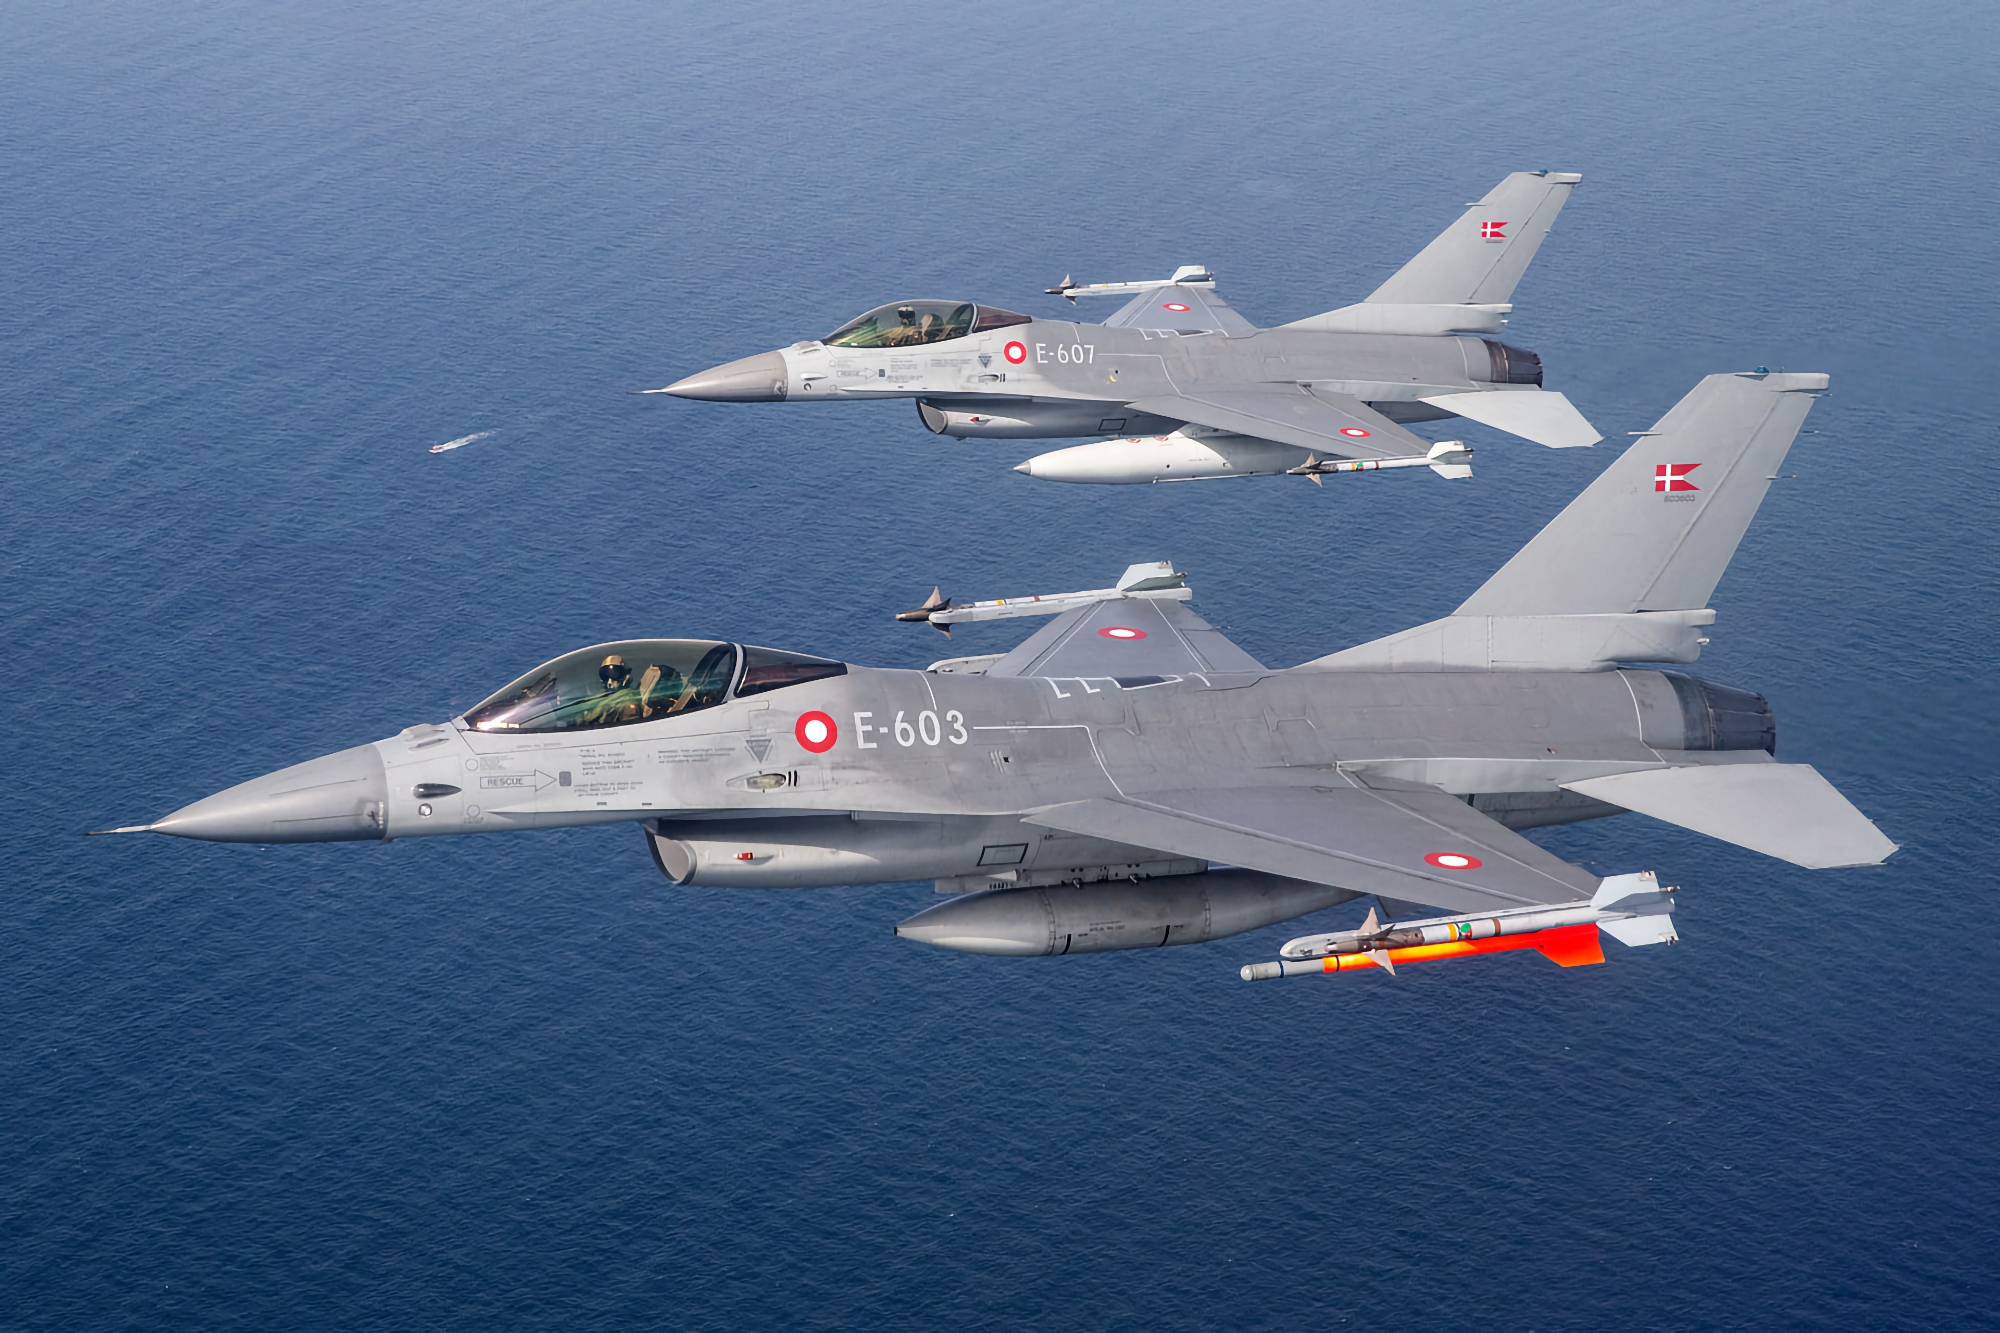 Danmark forteller når de første F-16 Fighting Falcon-flyene overføres til Ukraina